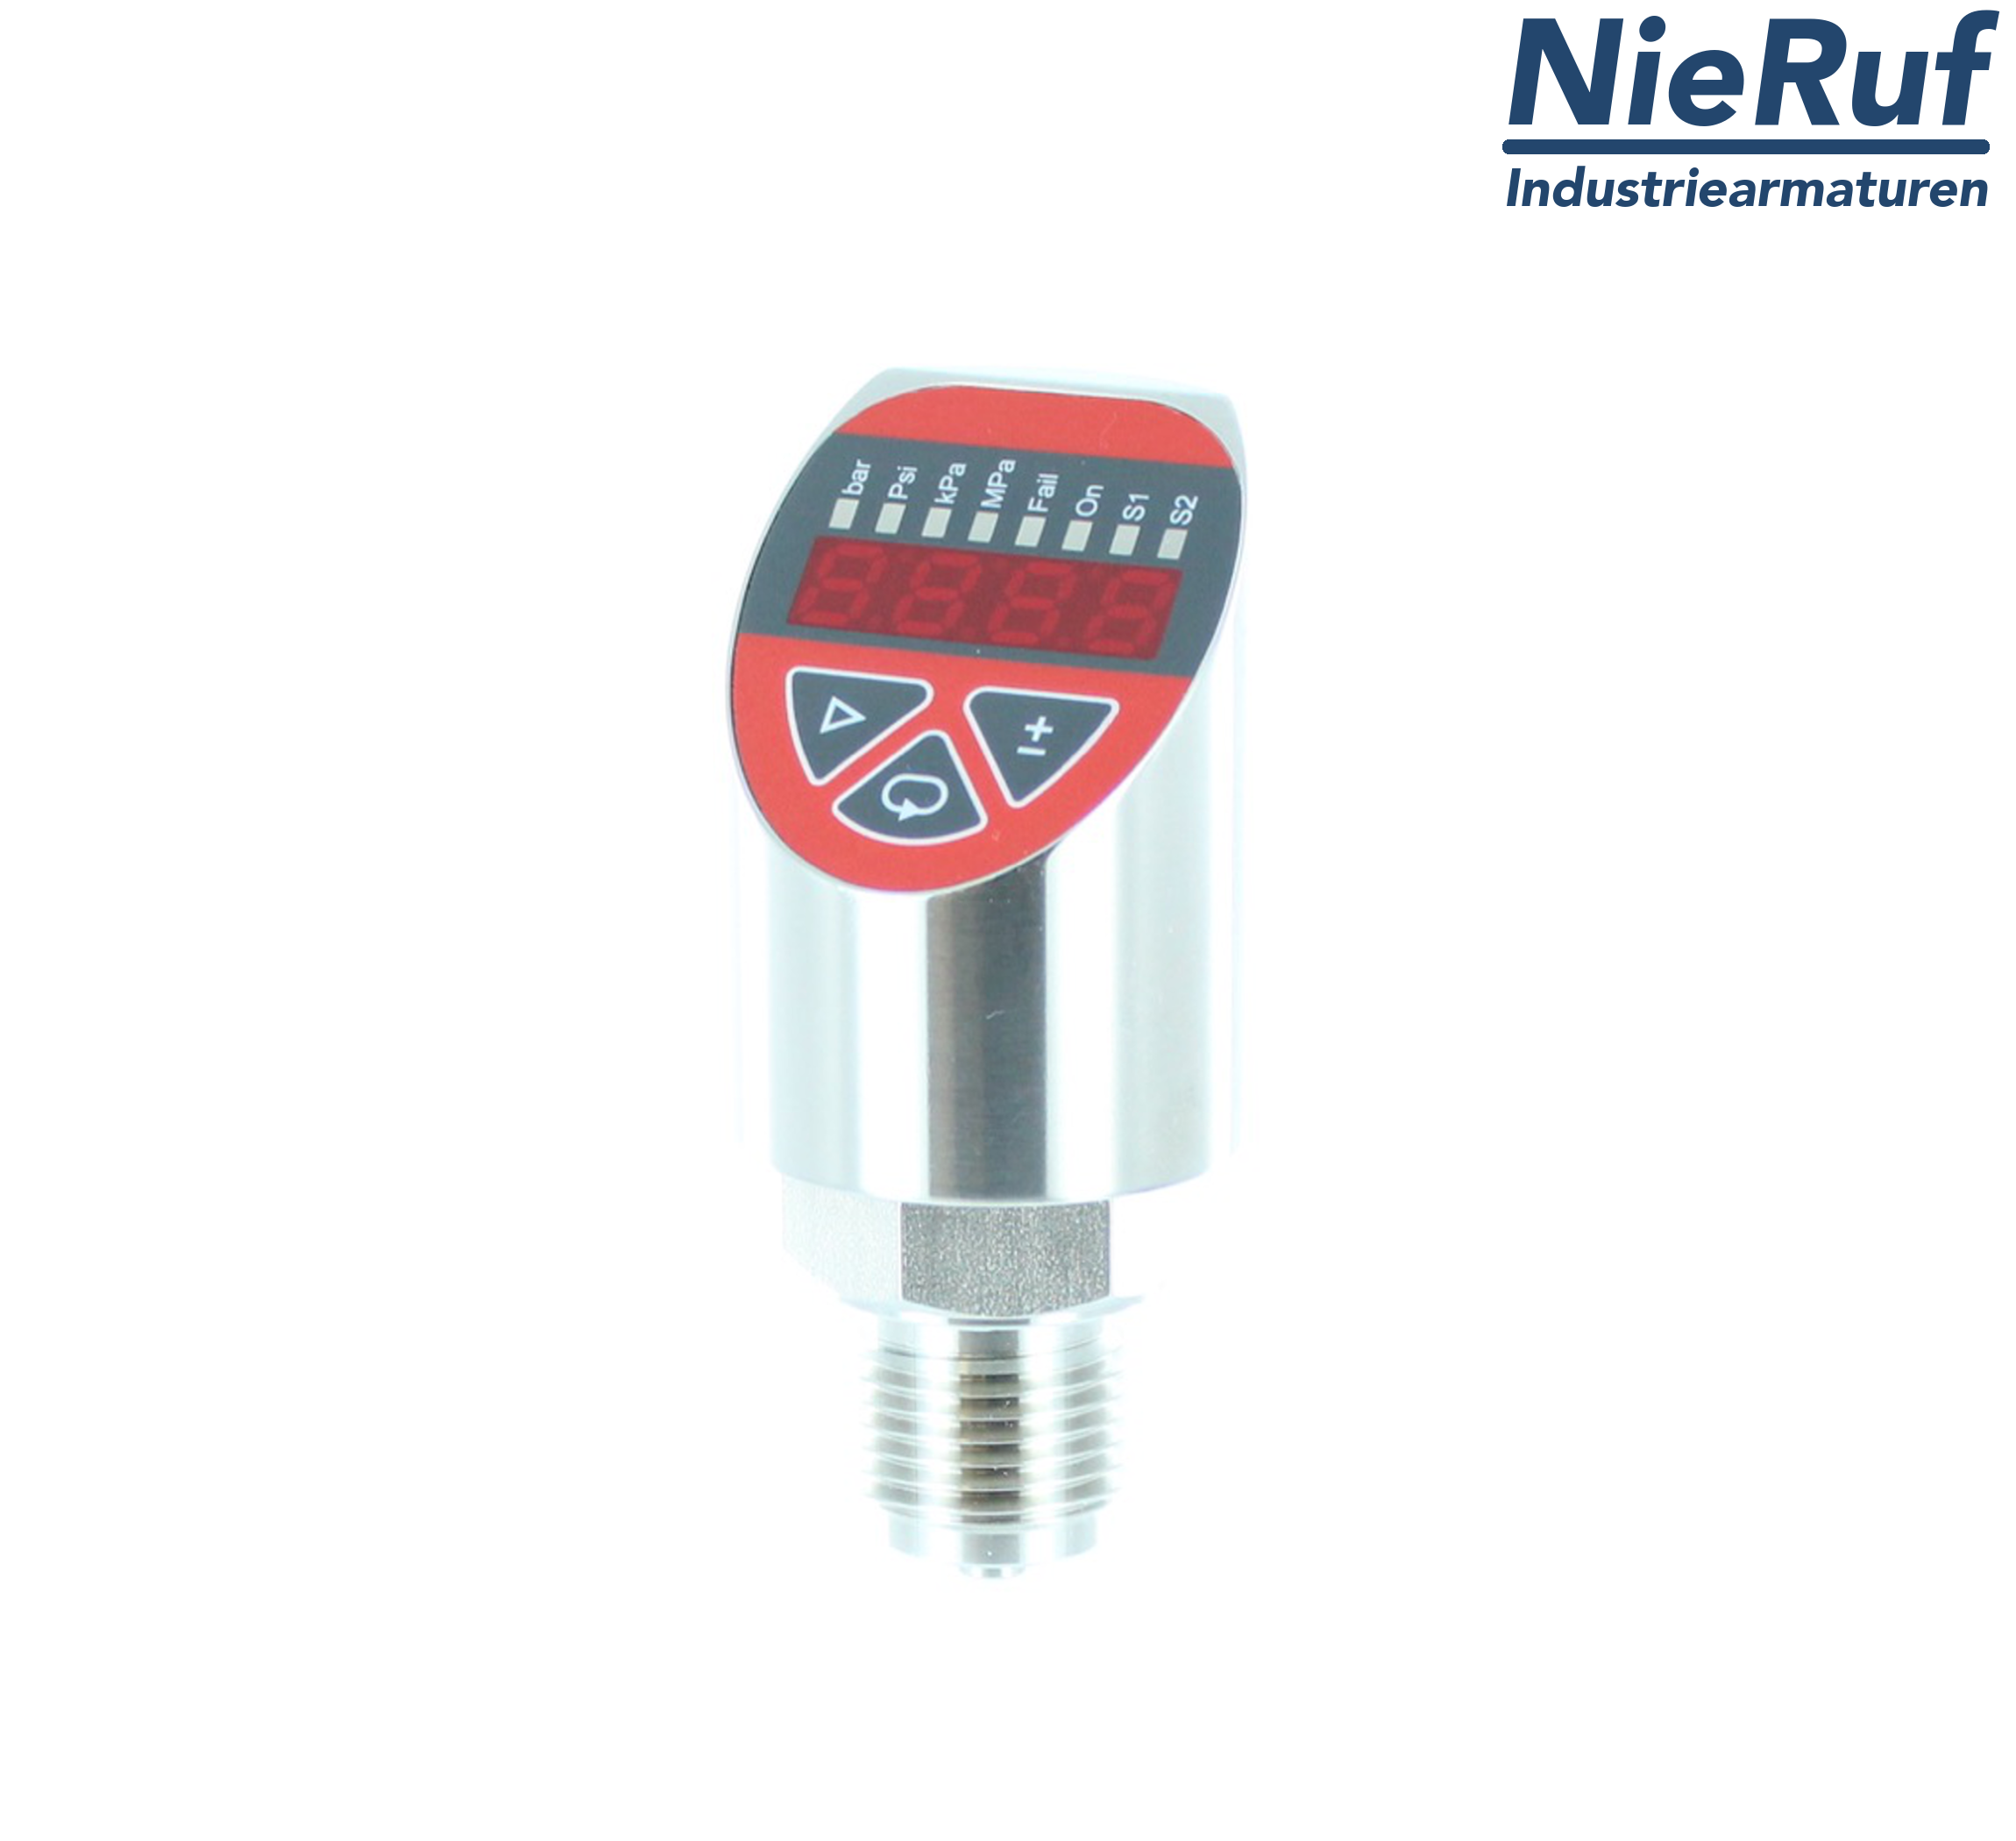 digital pressure sensor G 1/2" B IB 4-wire: 1xPNP, 1x4 - 20mA, Desina FPM 0,0 - 10,0 bar